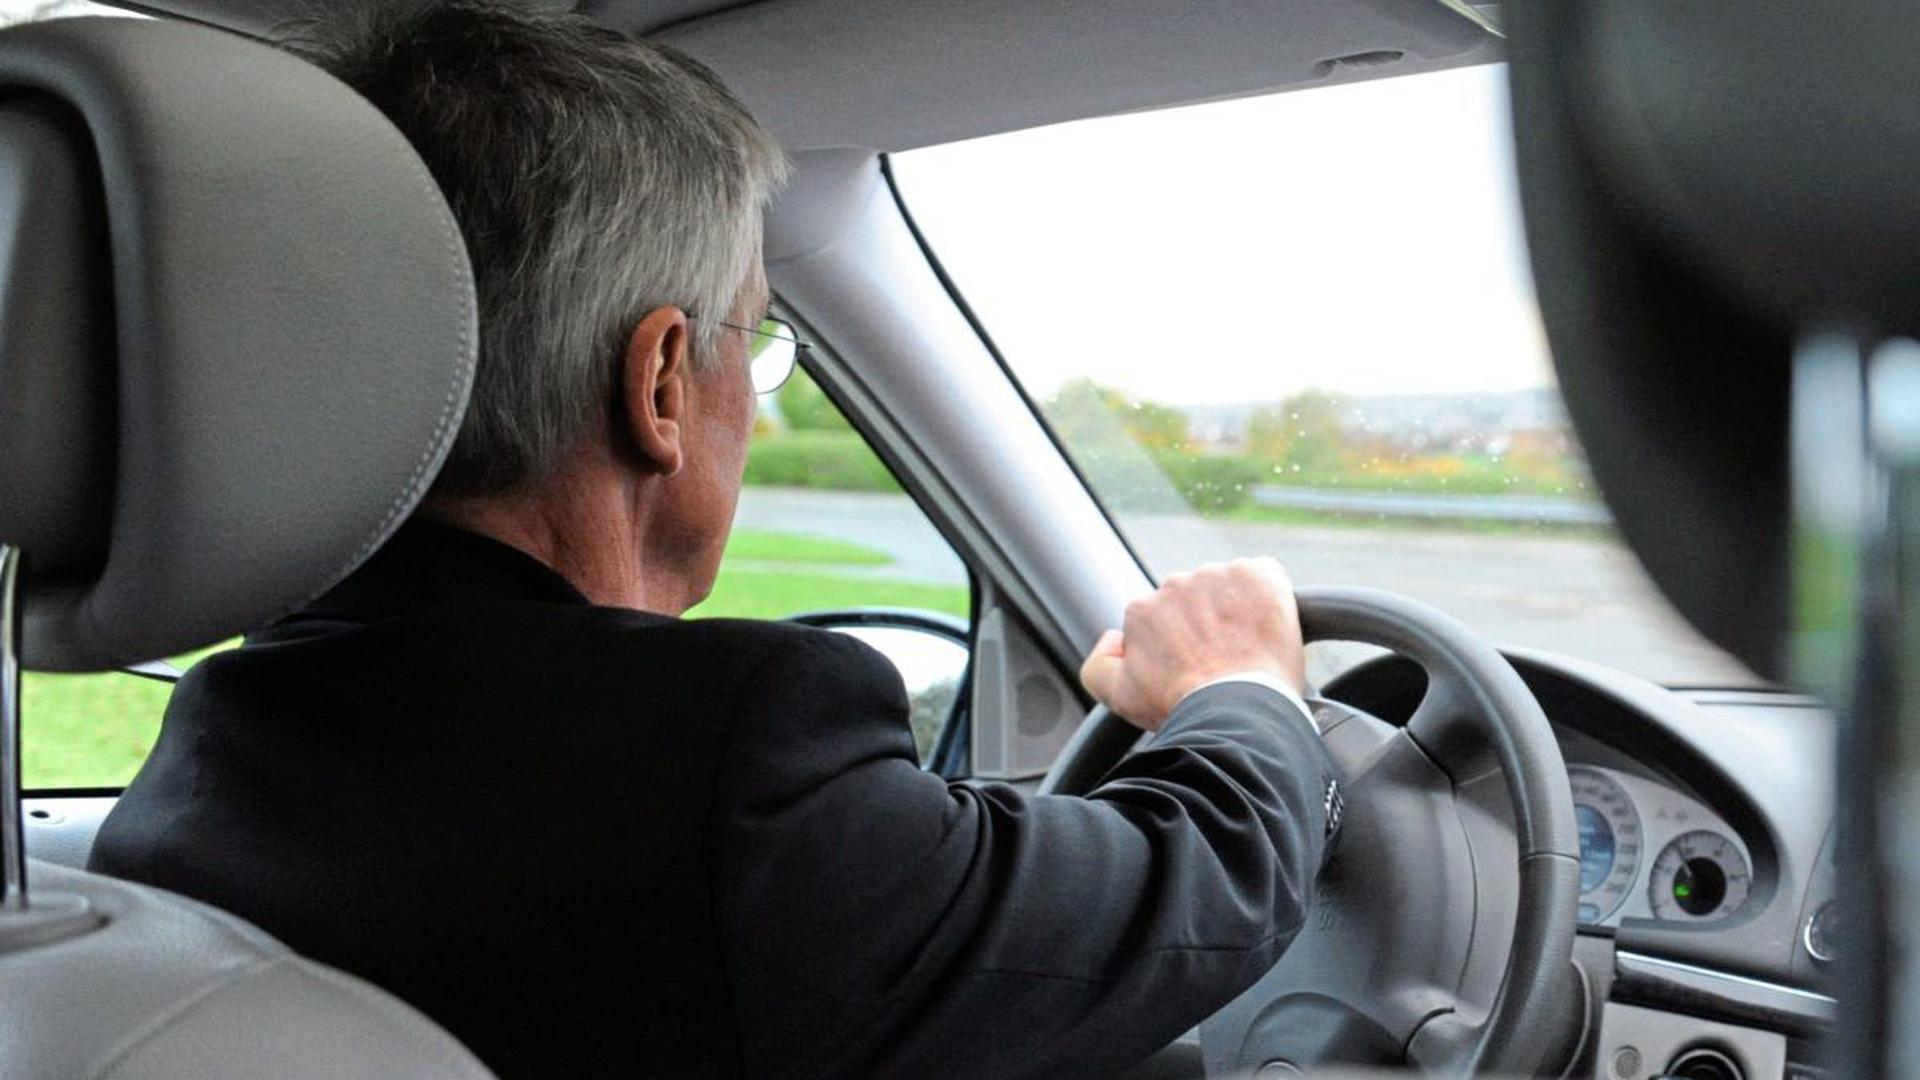 Ein Rentner am Steuer beim Fahrsicherheitstraining. Kritik an Autofahrern fortgeschrittenen Alters ist nach Unfällen immer dann zu hören, wenn diese von Senioren verursacht wurden. Die selbstkritische Einschätzung der Fahrtüchtigkeit ist wichtig, sagen Experten.